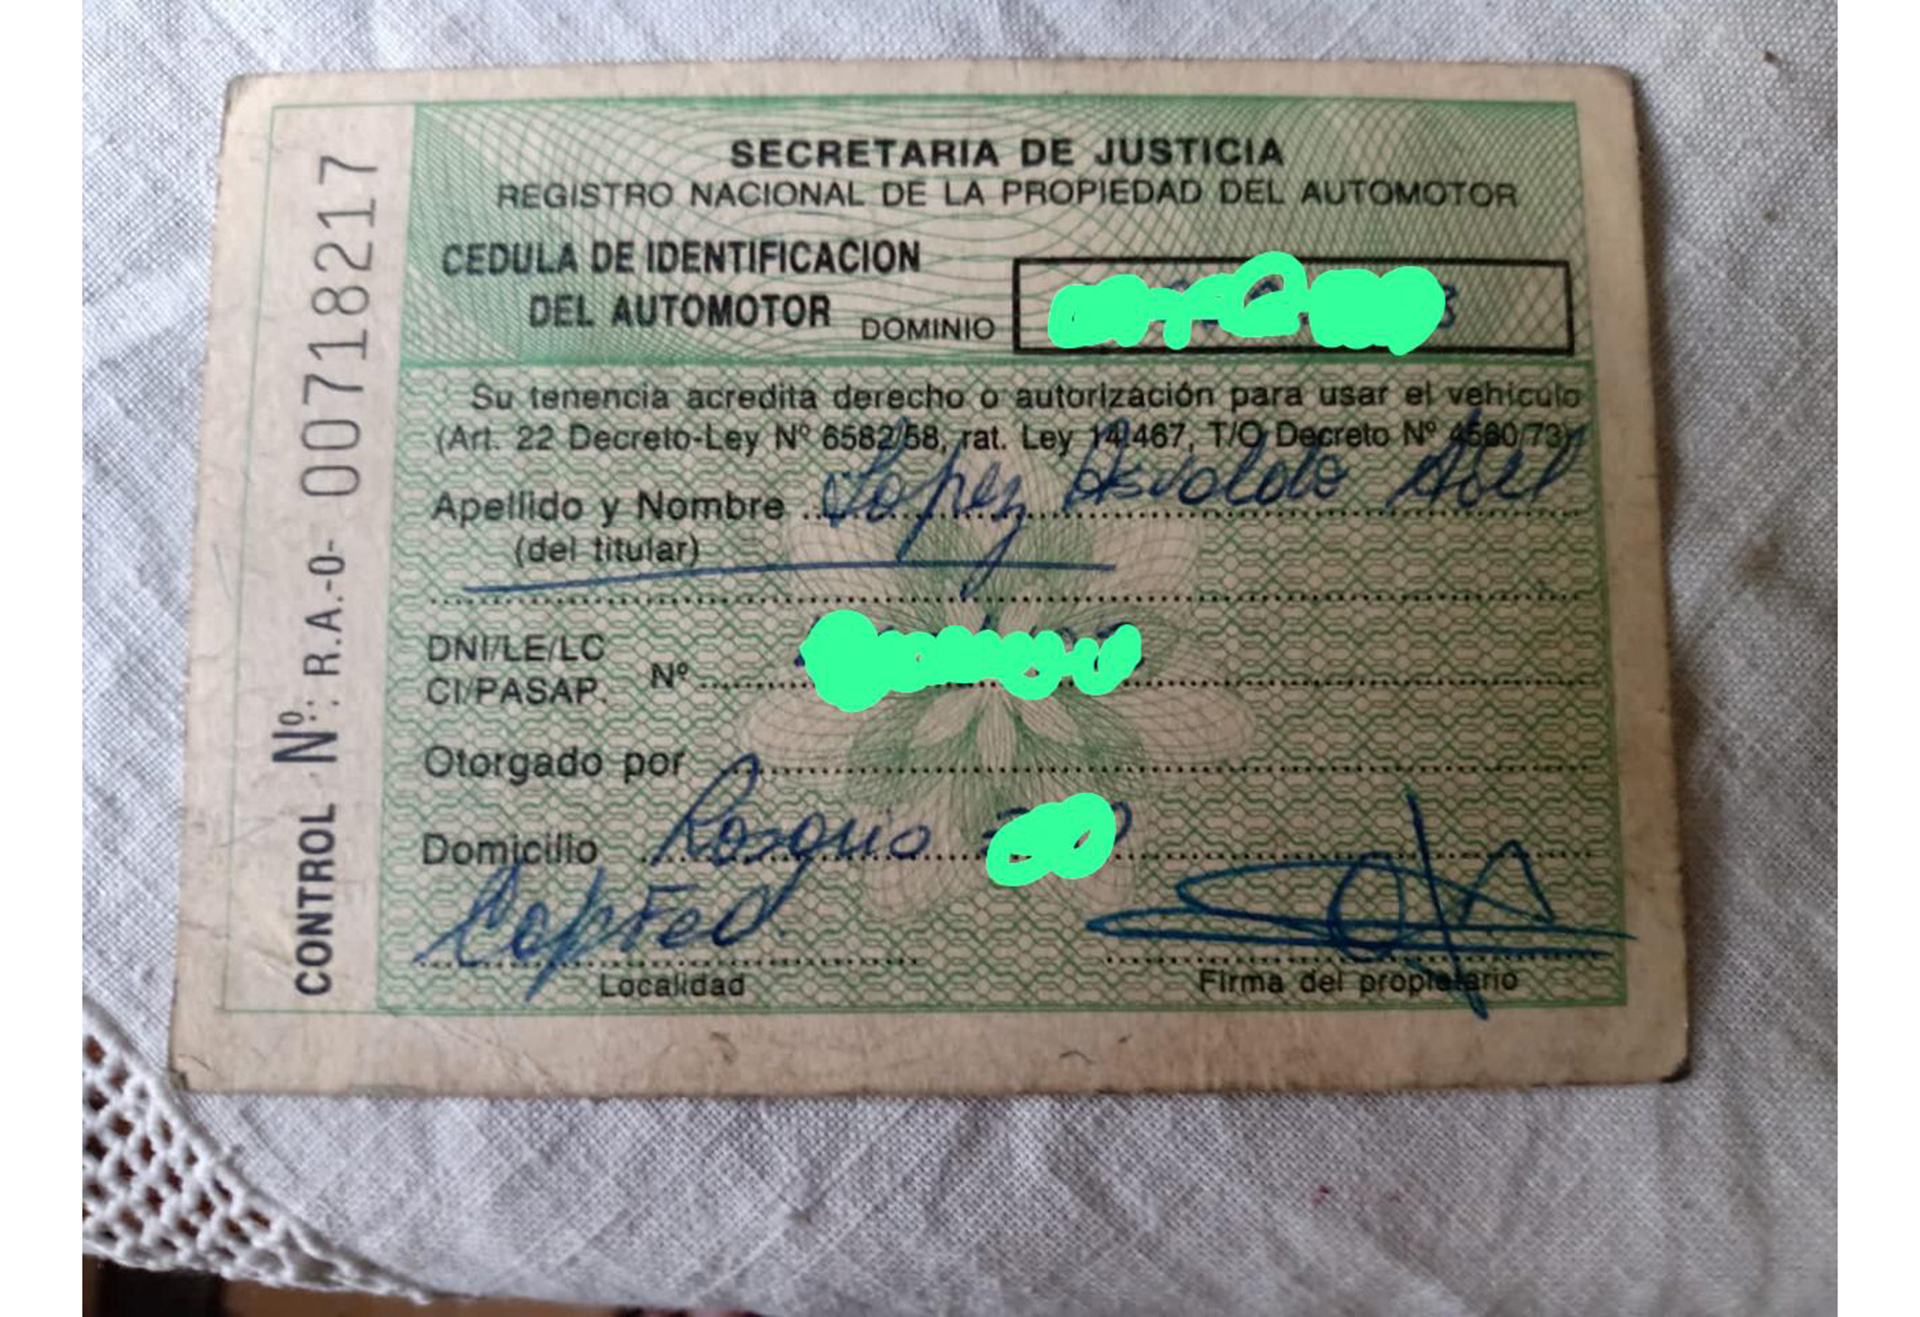 La cédula verde a nombre Osvaldo Abel López, un documento clave para confirmar que el coche era el original (Hermanos Medina)